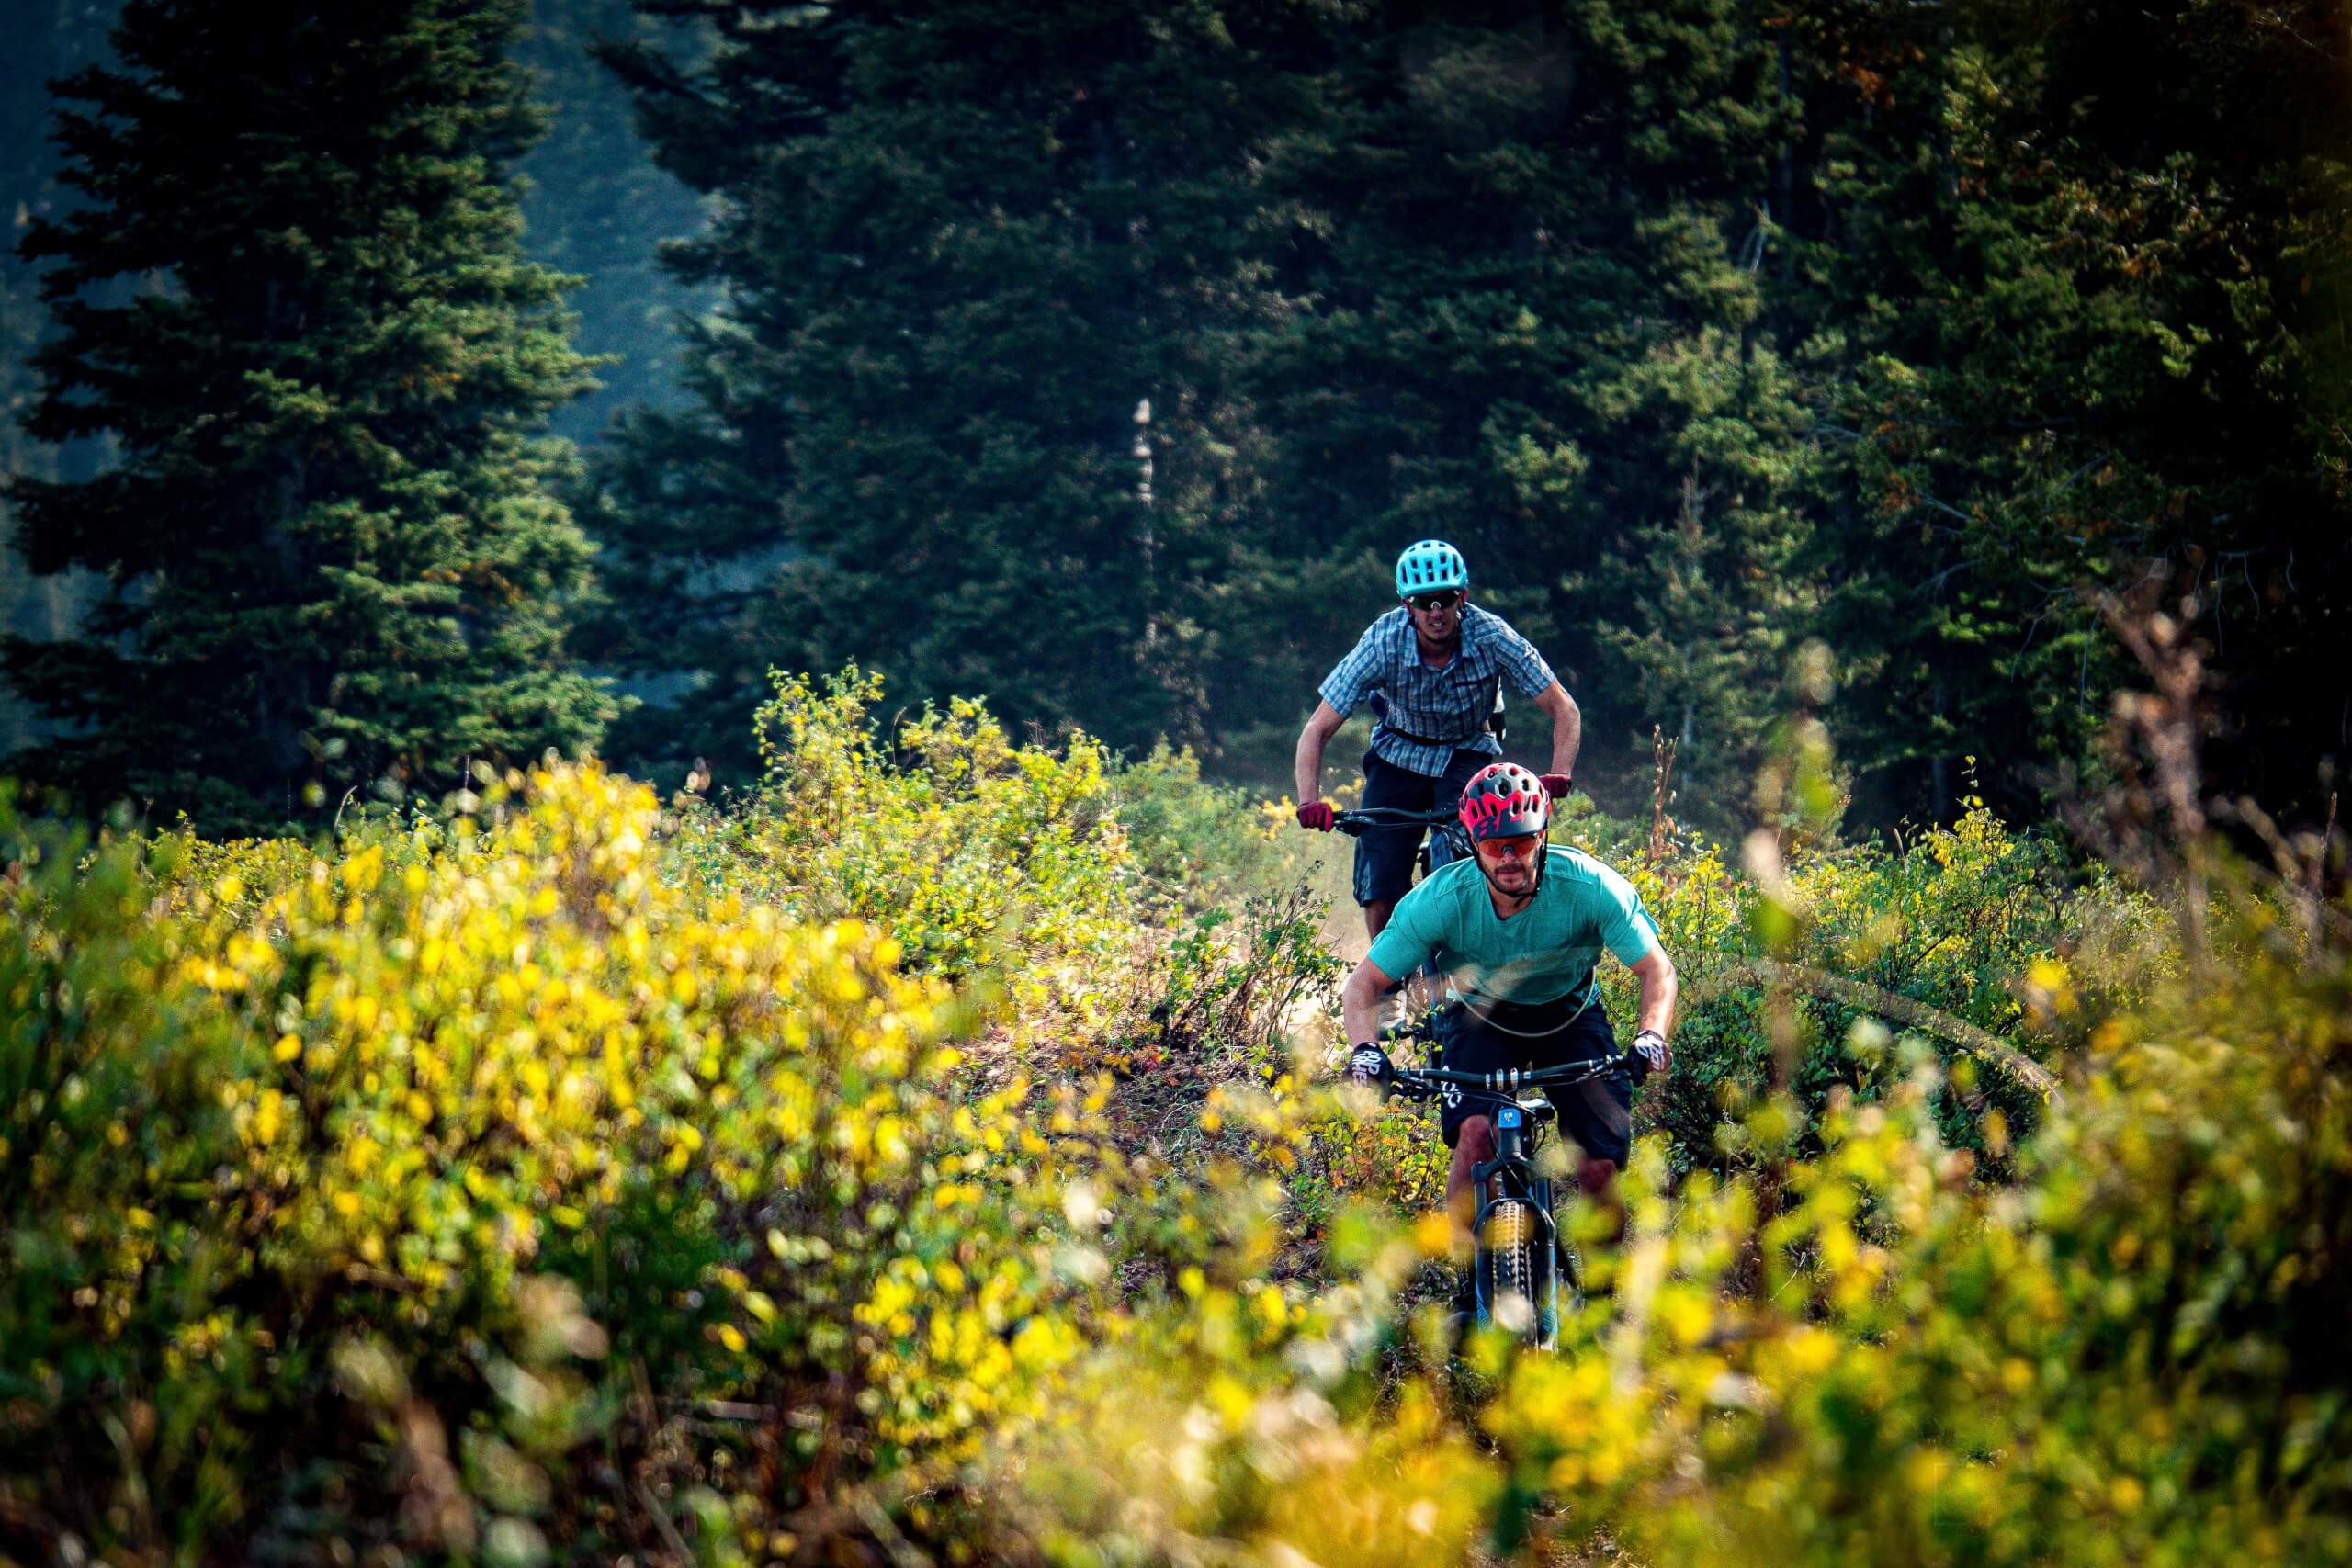 two men riding mountain bikes through a forest of trees